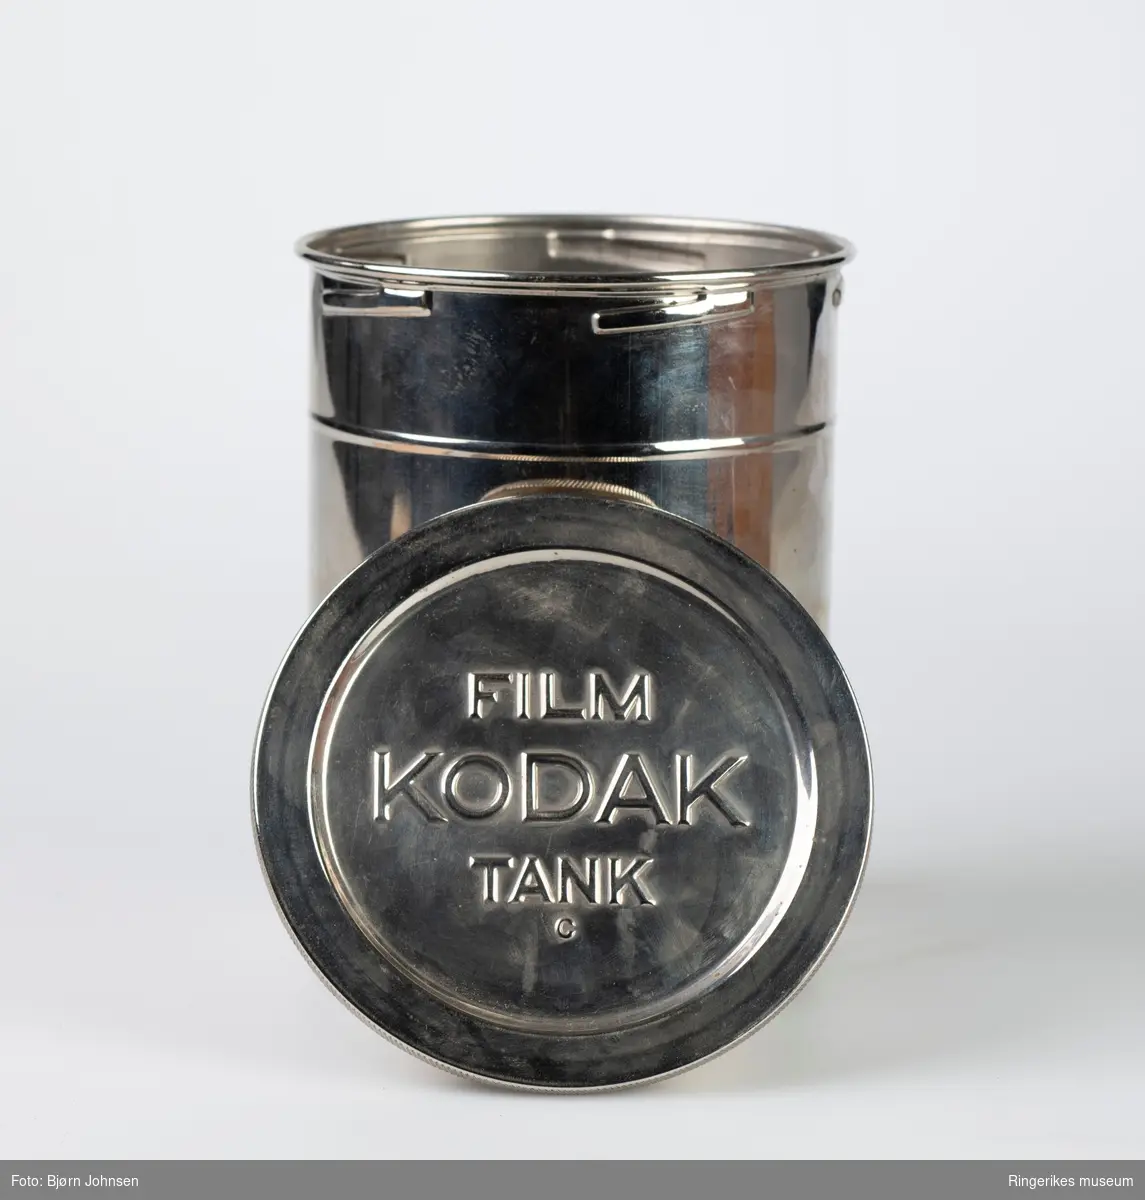 Kodak filmfremkallingsutstyr- Kodak filmtank ble produsert i perioden 1905-1937 
Settet består av en tre eske for å tre filmen inn på spoler,  en fremkallingsboks og en pakke med Kodak kjemi, Kodak developing powder.
Model B-2 fra 1916.